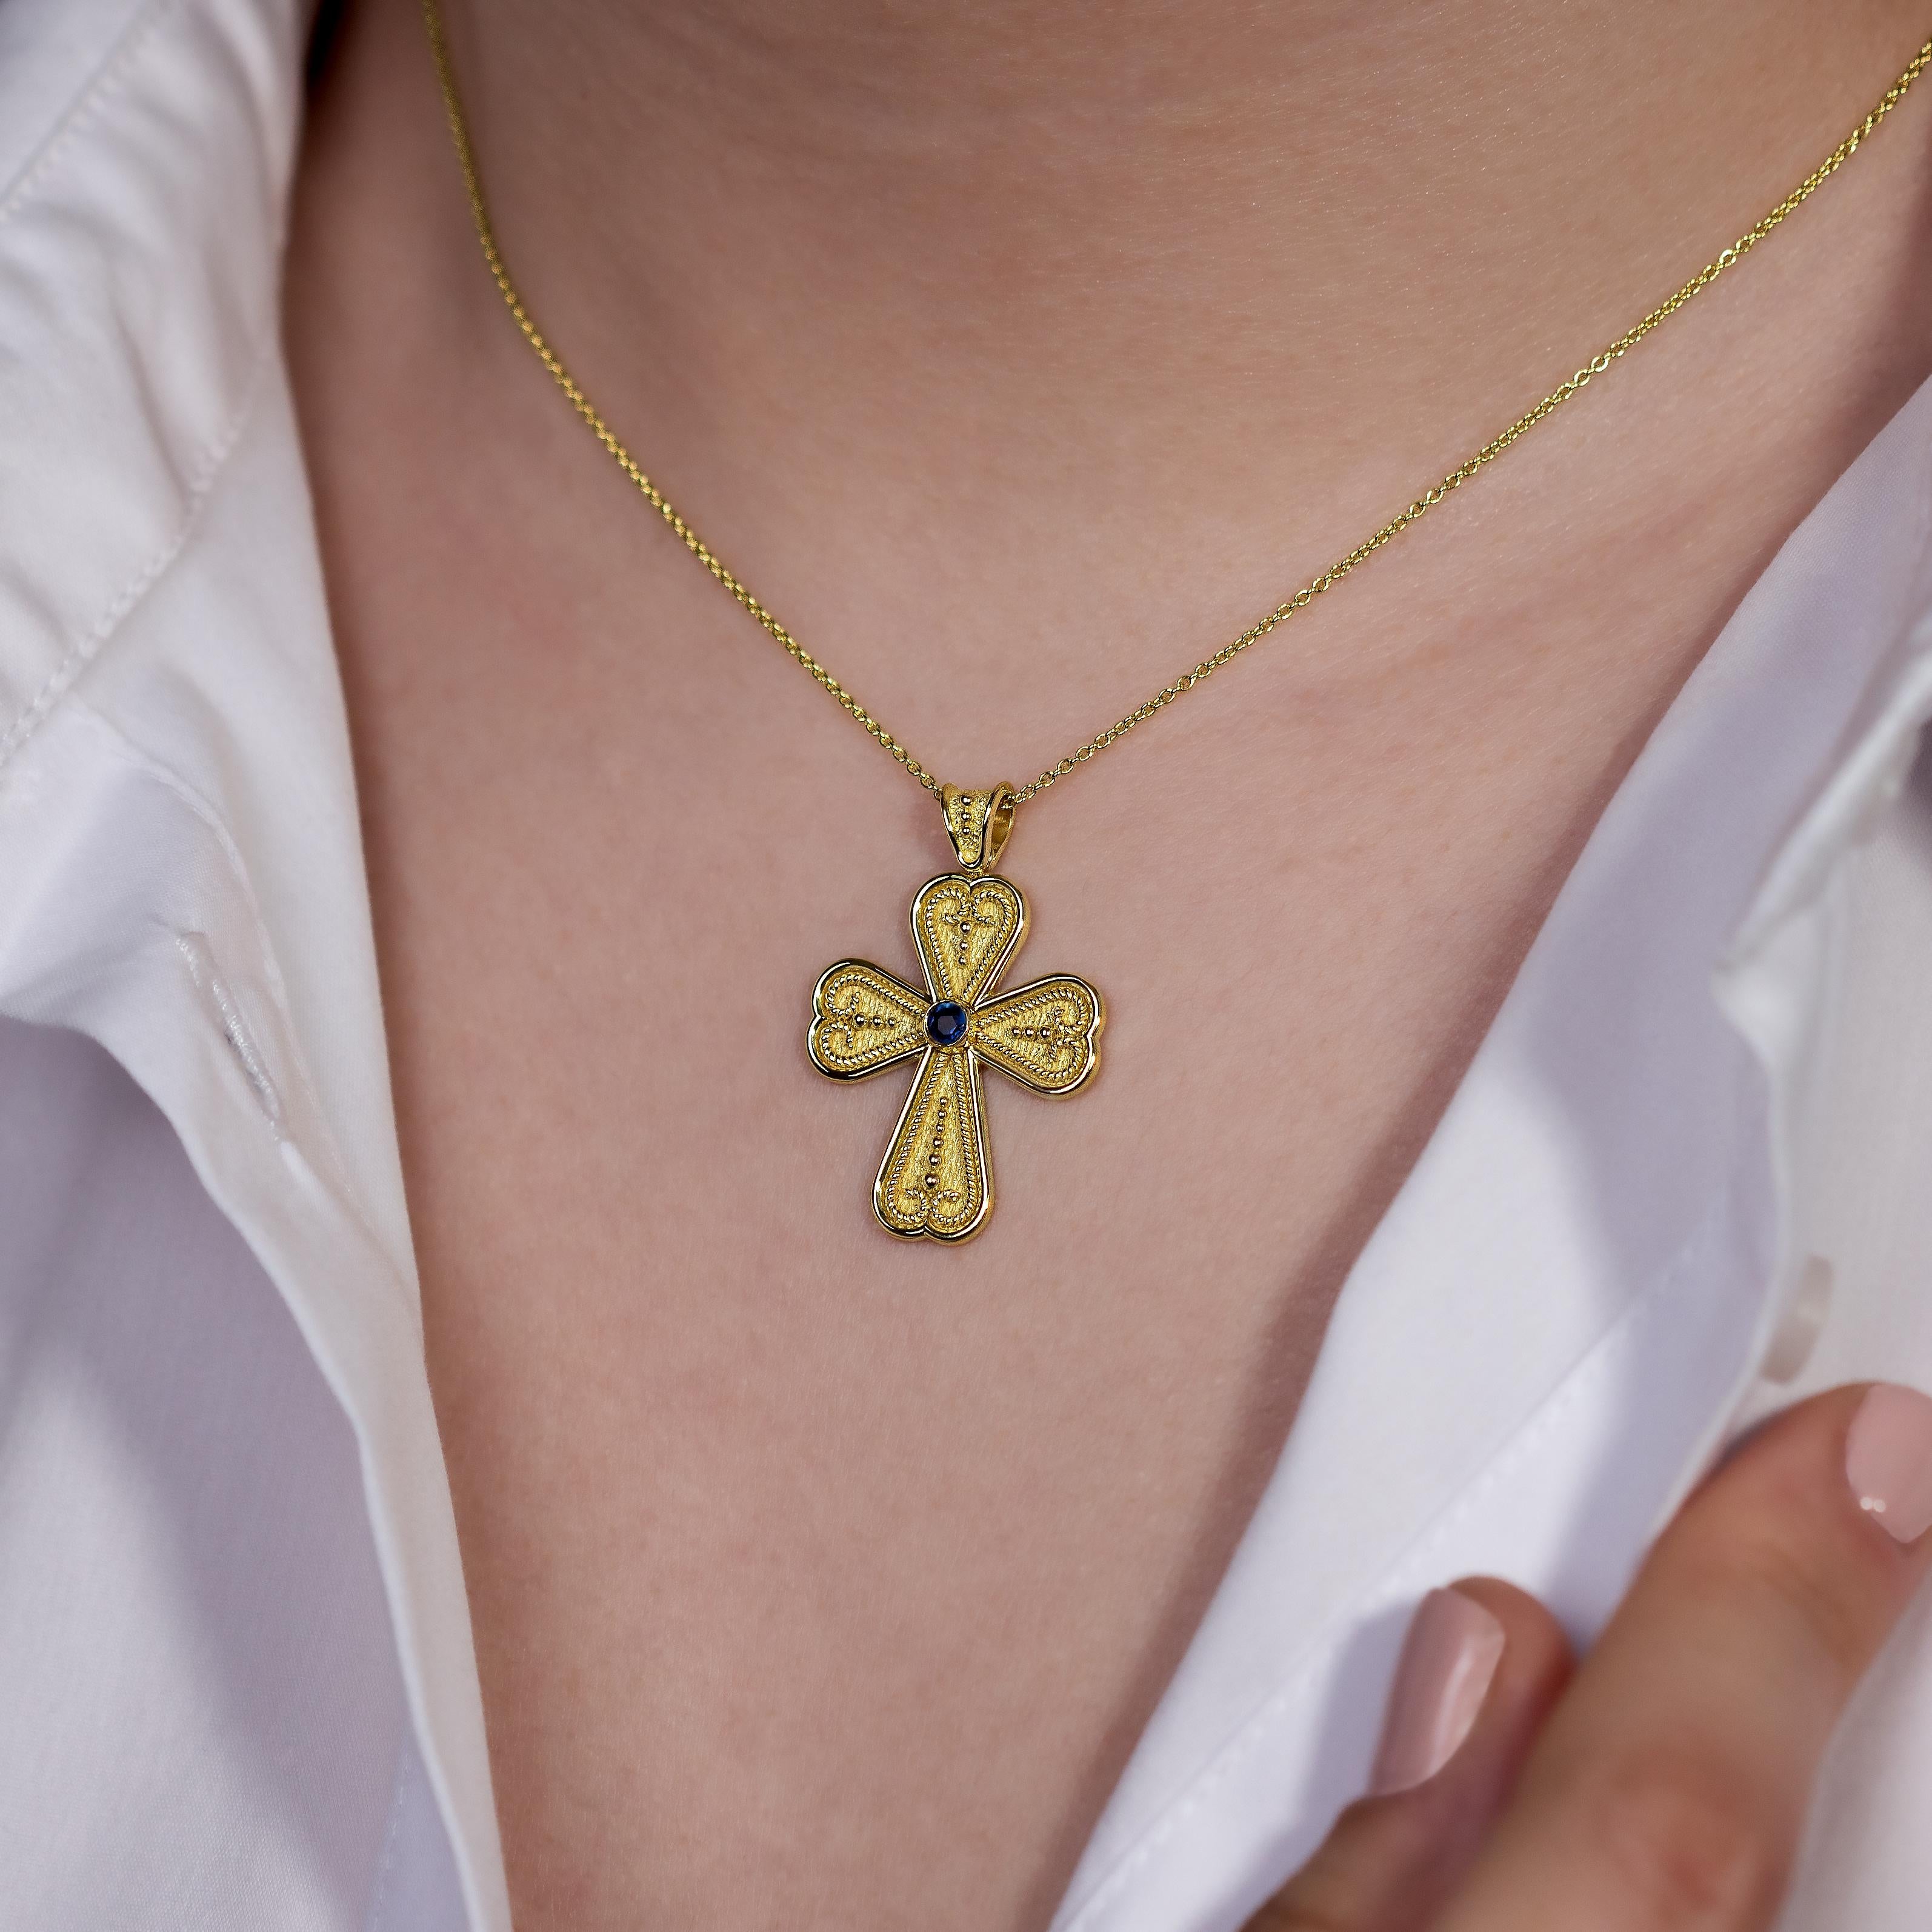 Schmücken Sie Ihr Dekolleté mit der bezaubernden Schönheit eines byzantinischen Herzkreuz-Anhängers, in dessen Zentrum ein einzelner, strahlender Saphir steht - ein geschätztes Symbol für dauerhafte Liebe und komplexe Kunstfertigkeit, die die Zeit